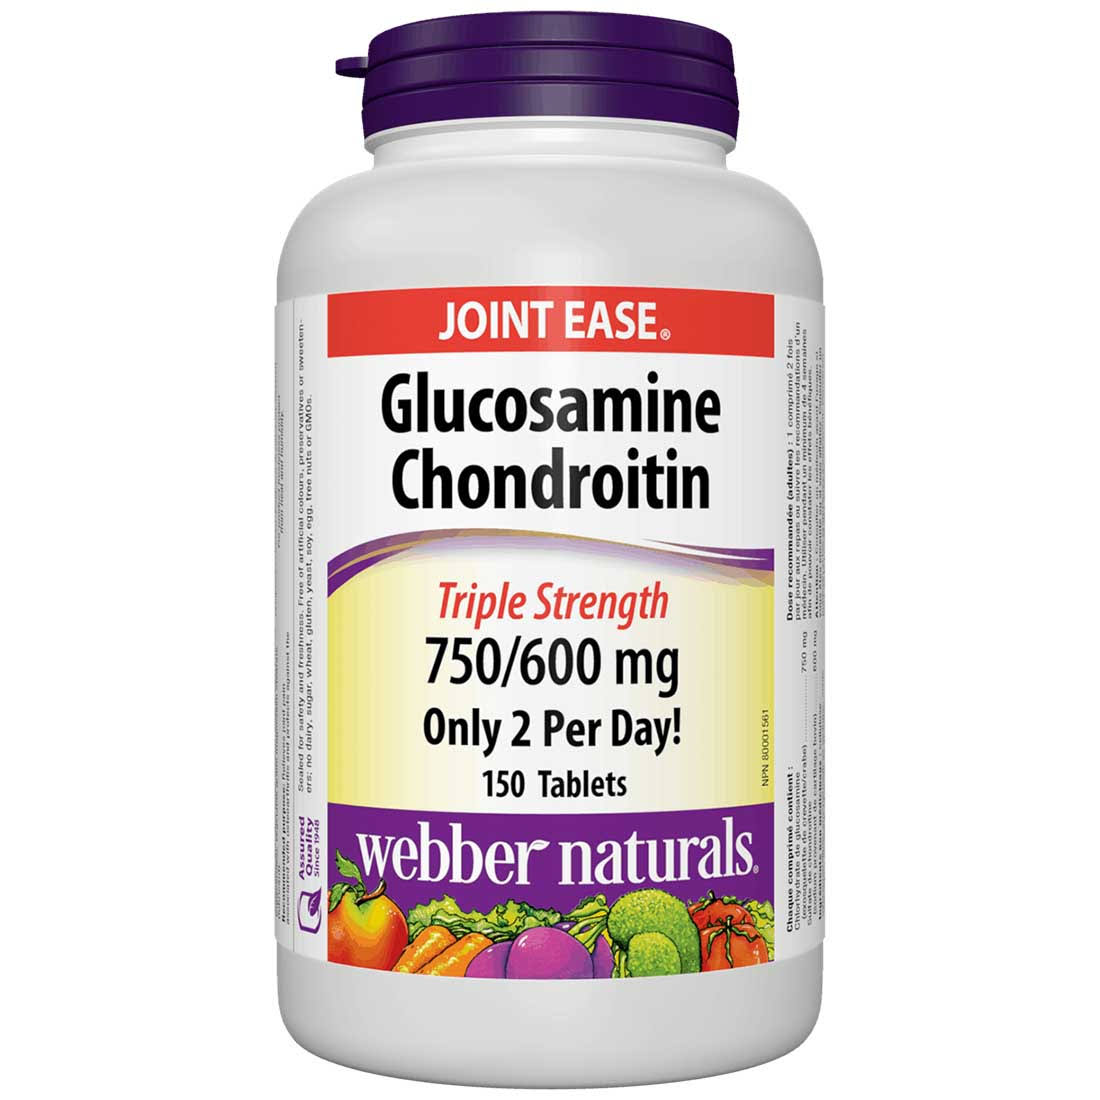 Webber Natural Glucosamine and Chondroitin Tablet - 750/600mg, 150ct